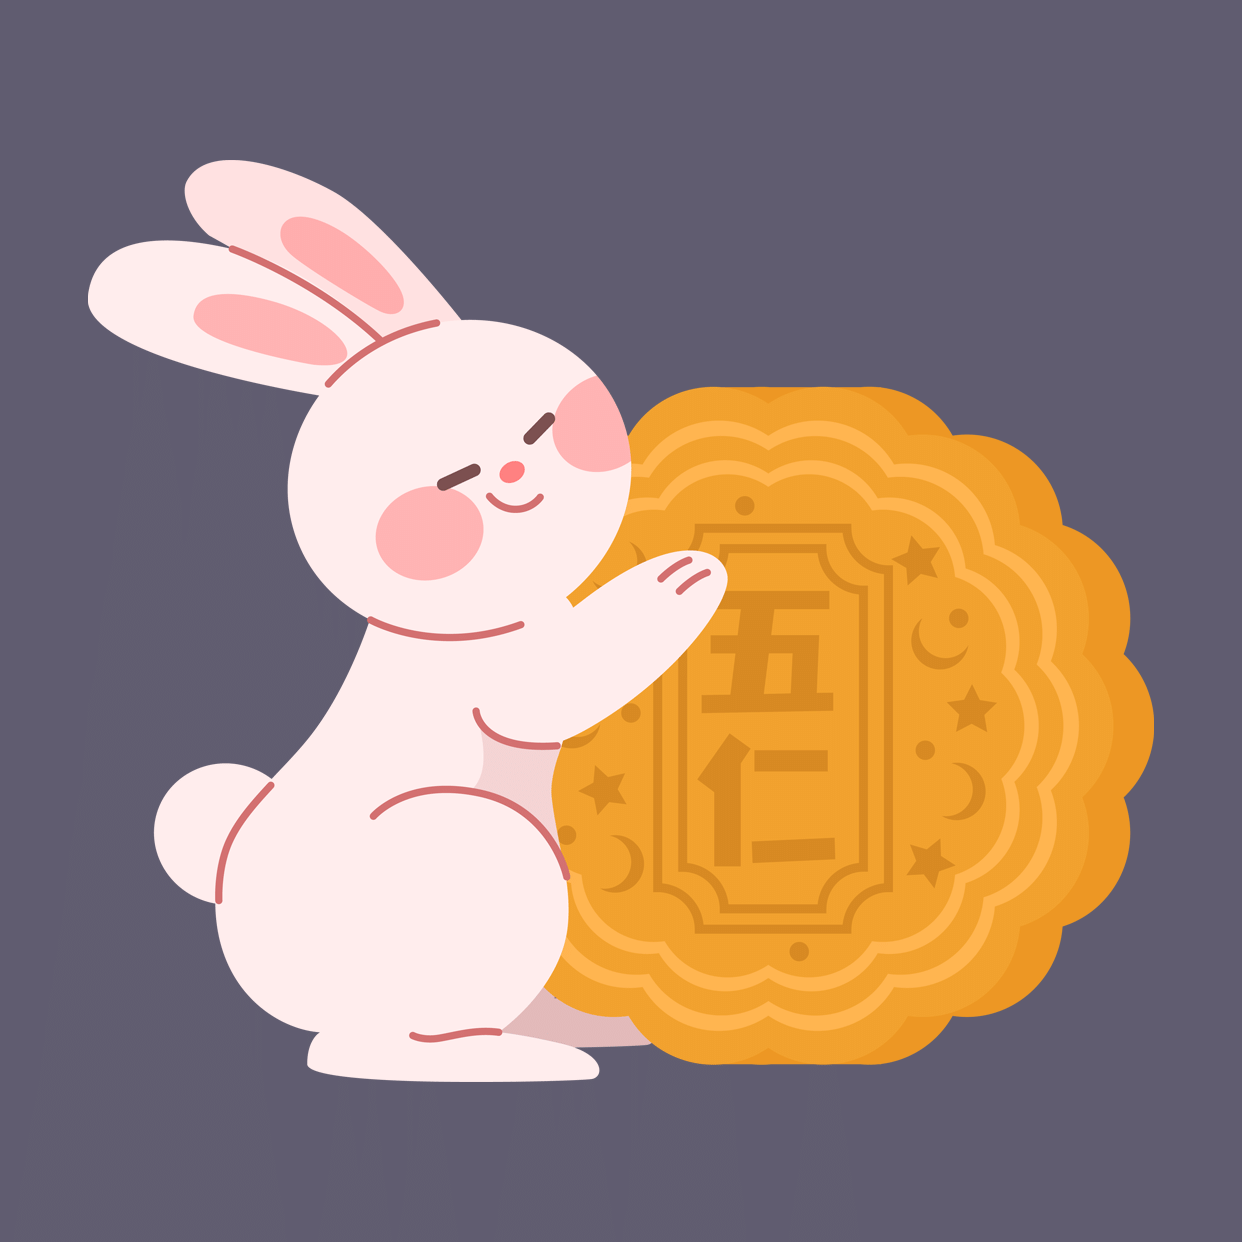 中秋节可爱手绘兔子月饼头像预览效果